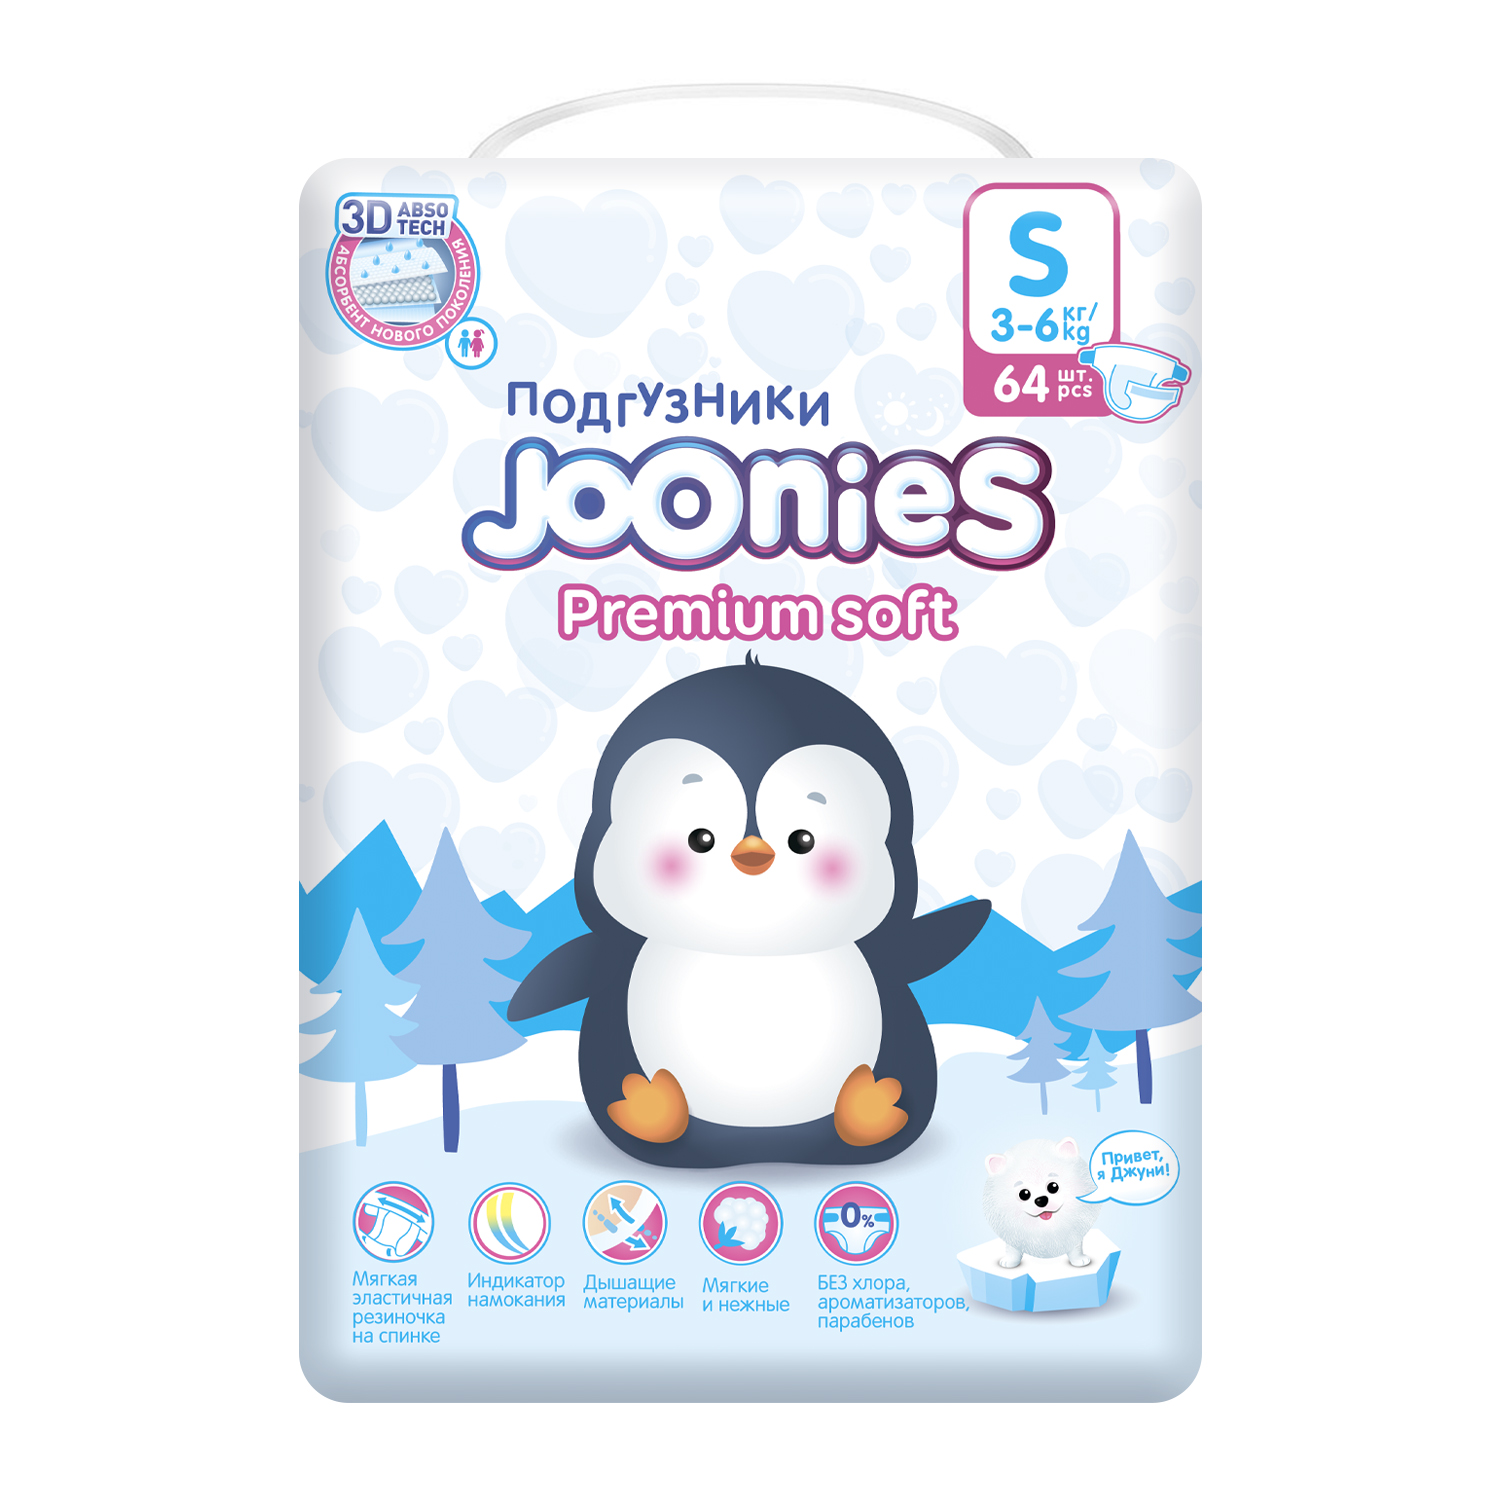 Подгузники Joonies Premium Soft S 3-6кг 64шт - фото 3